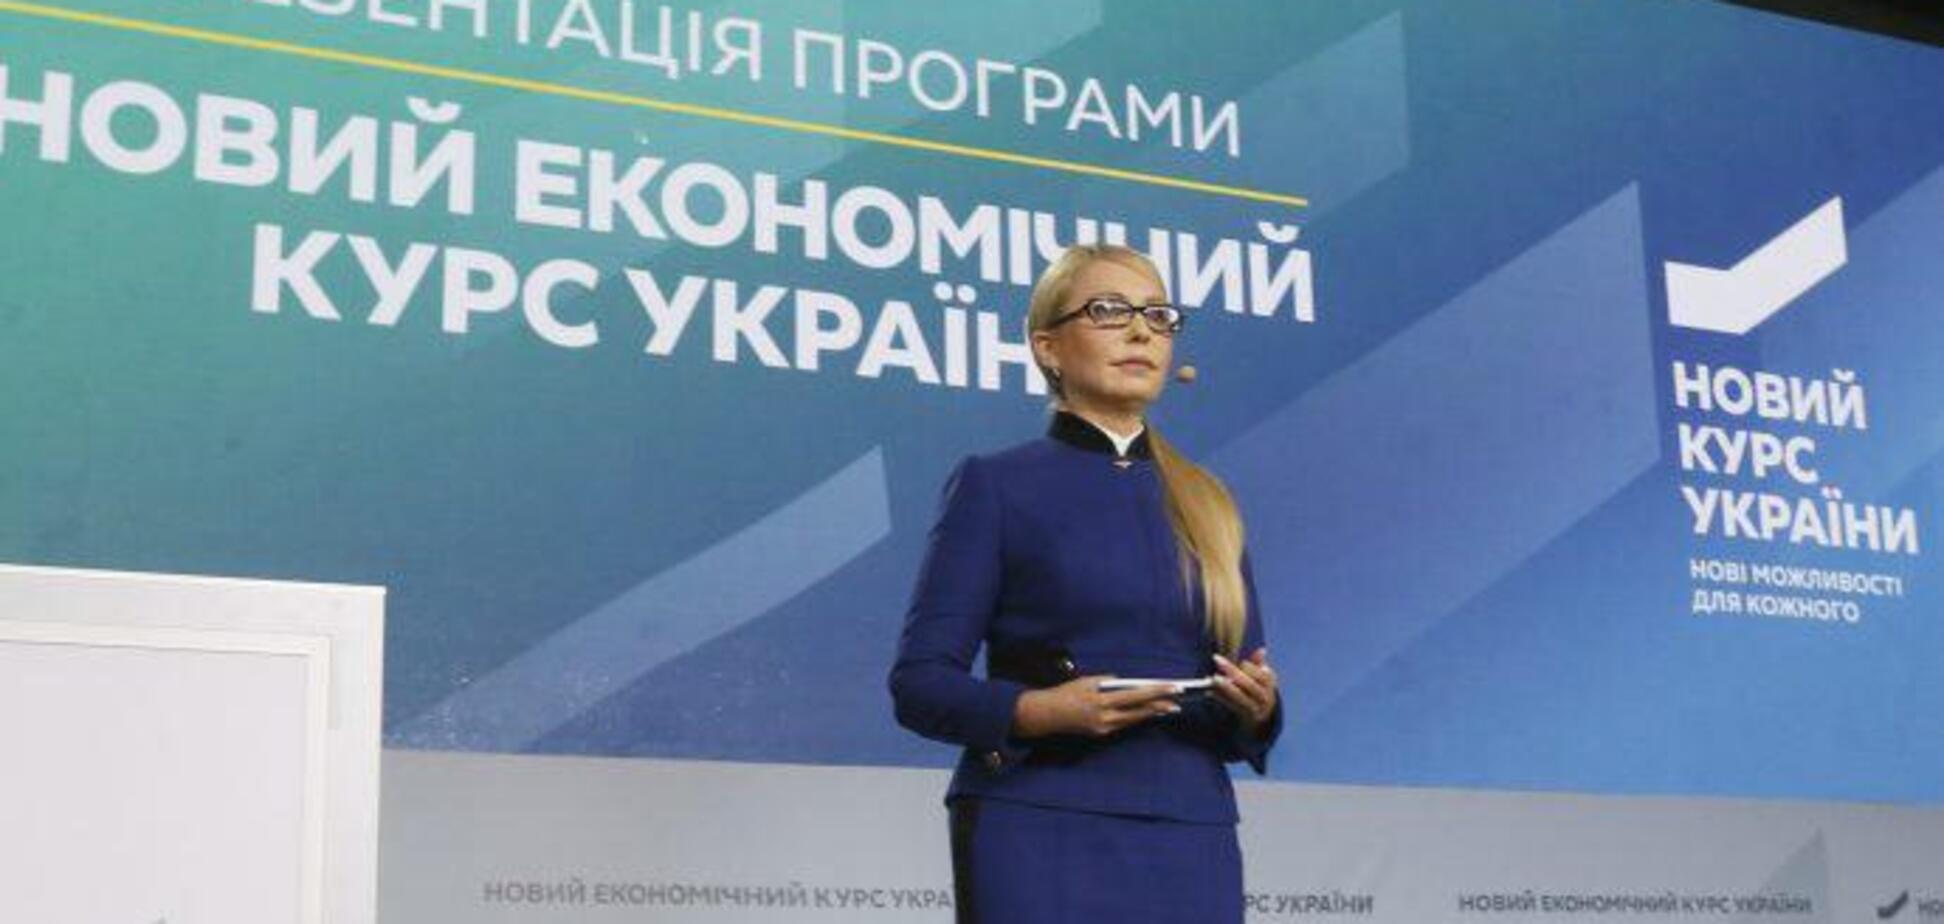 Новий курс Тимошенко забезпечить медицину в регіонах необхідними коштами